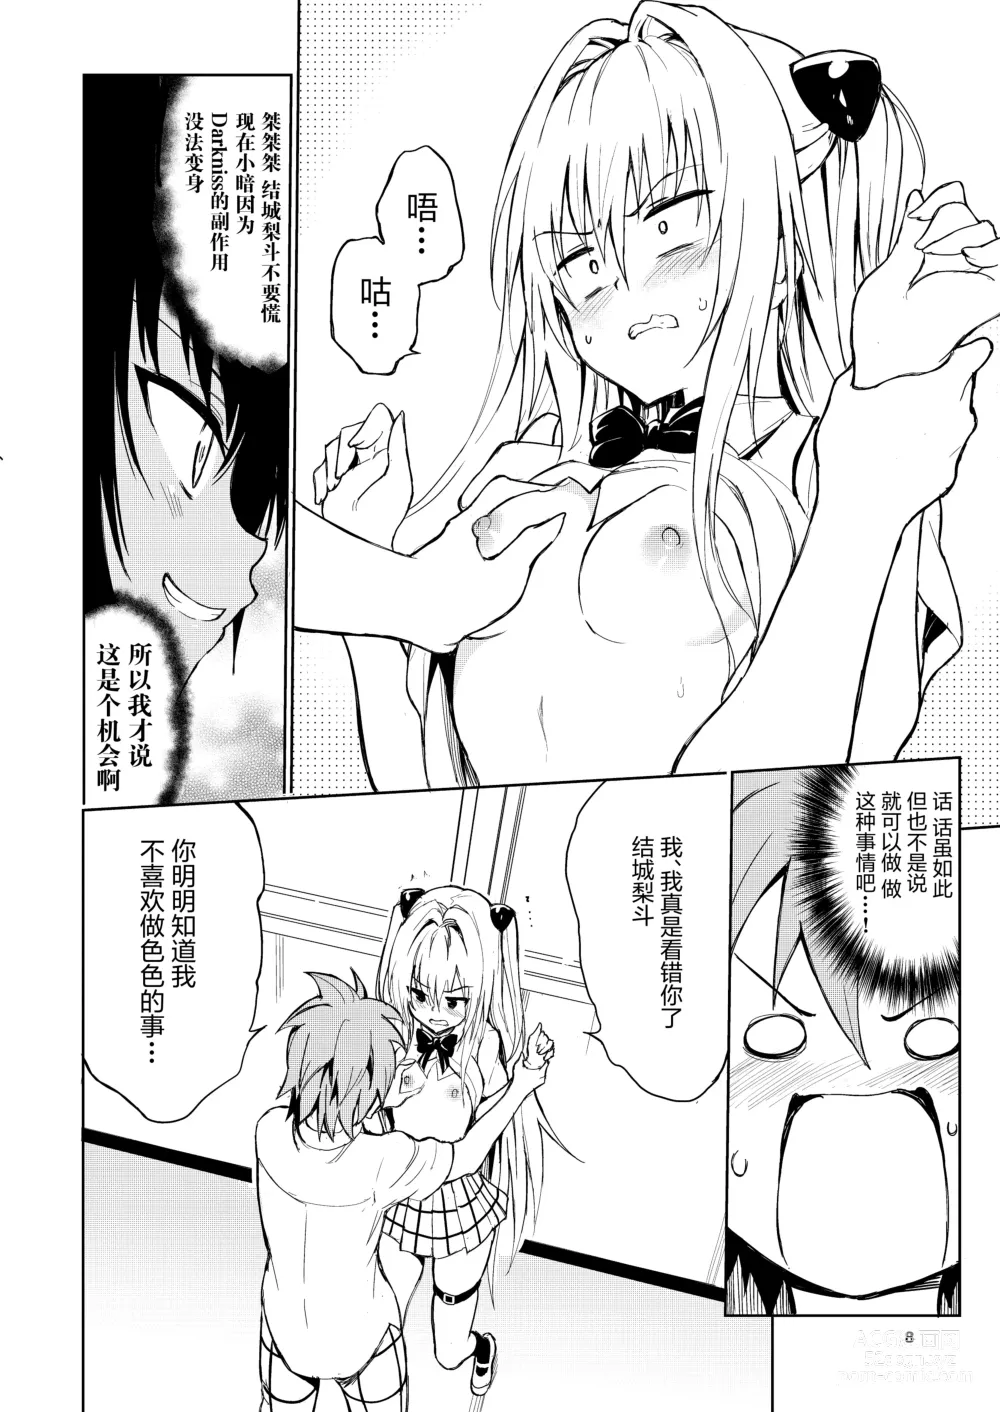 Page 9 of doujinshi Ecchii no wa Kirai desu ka?